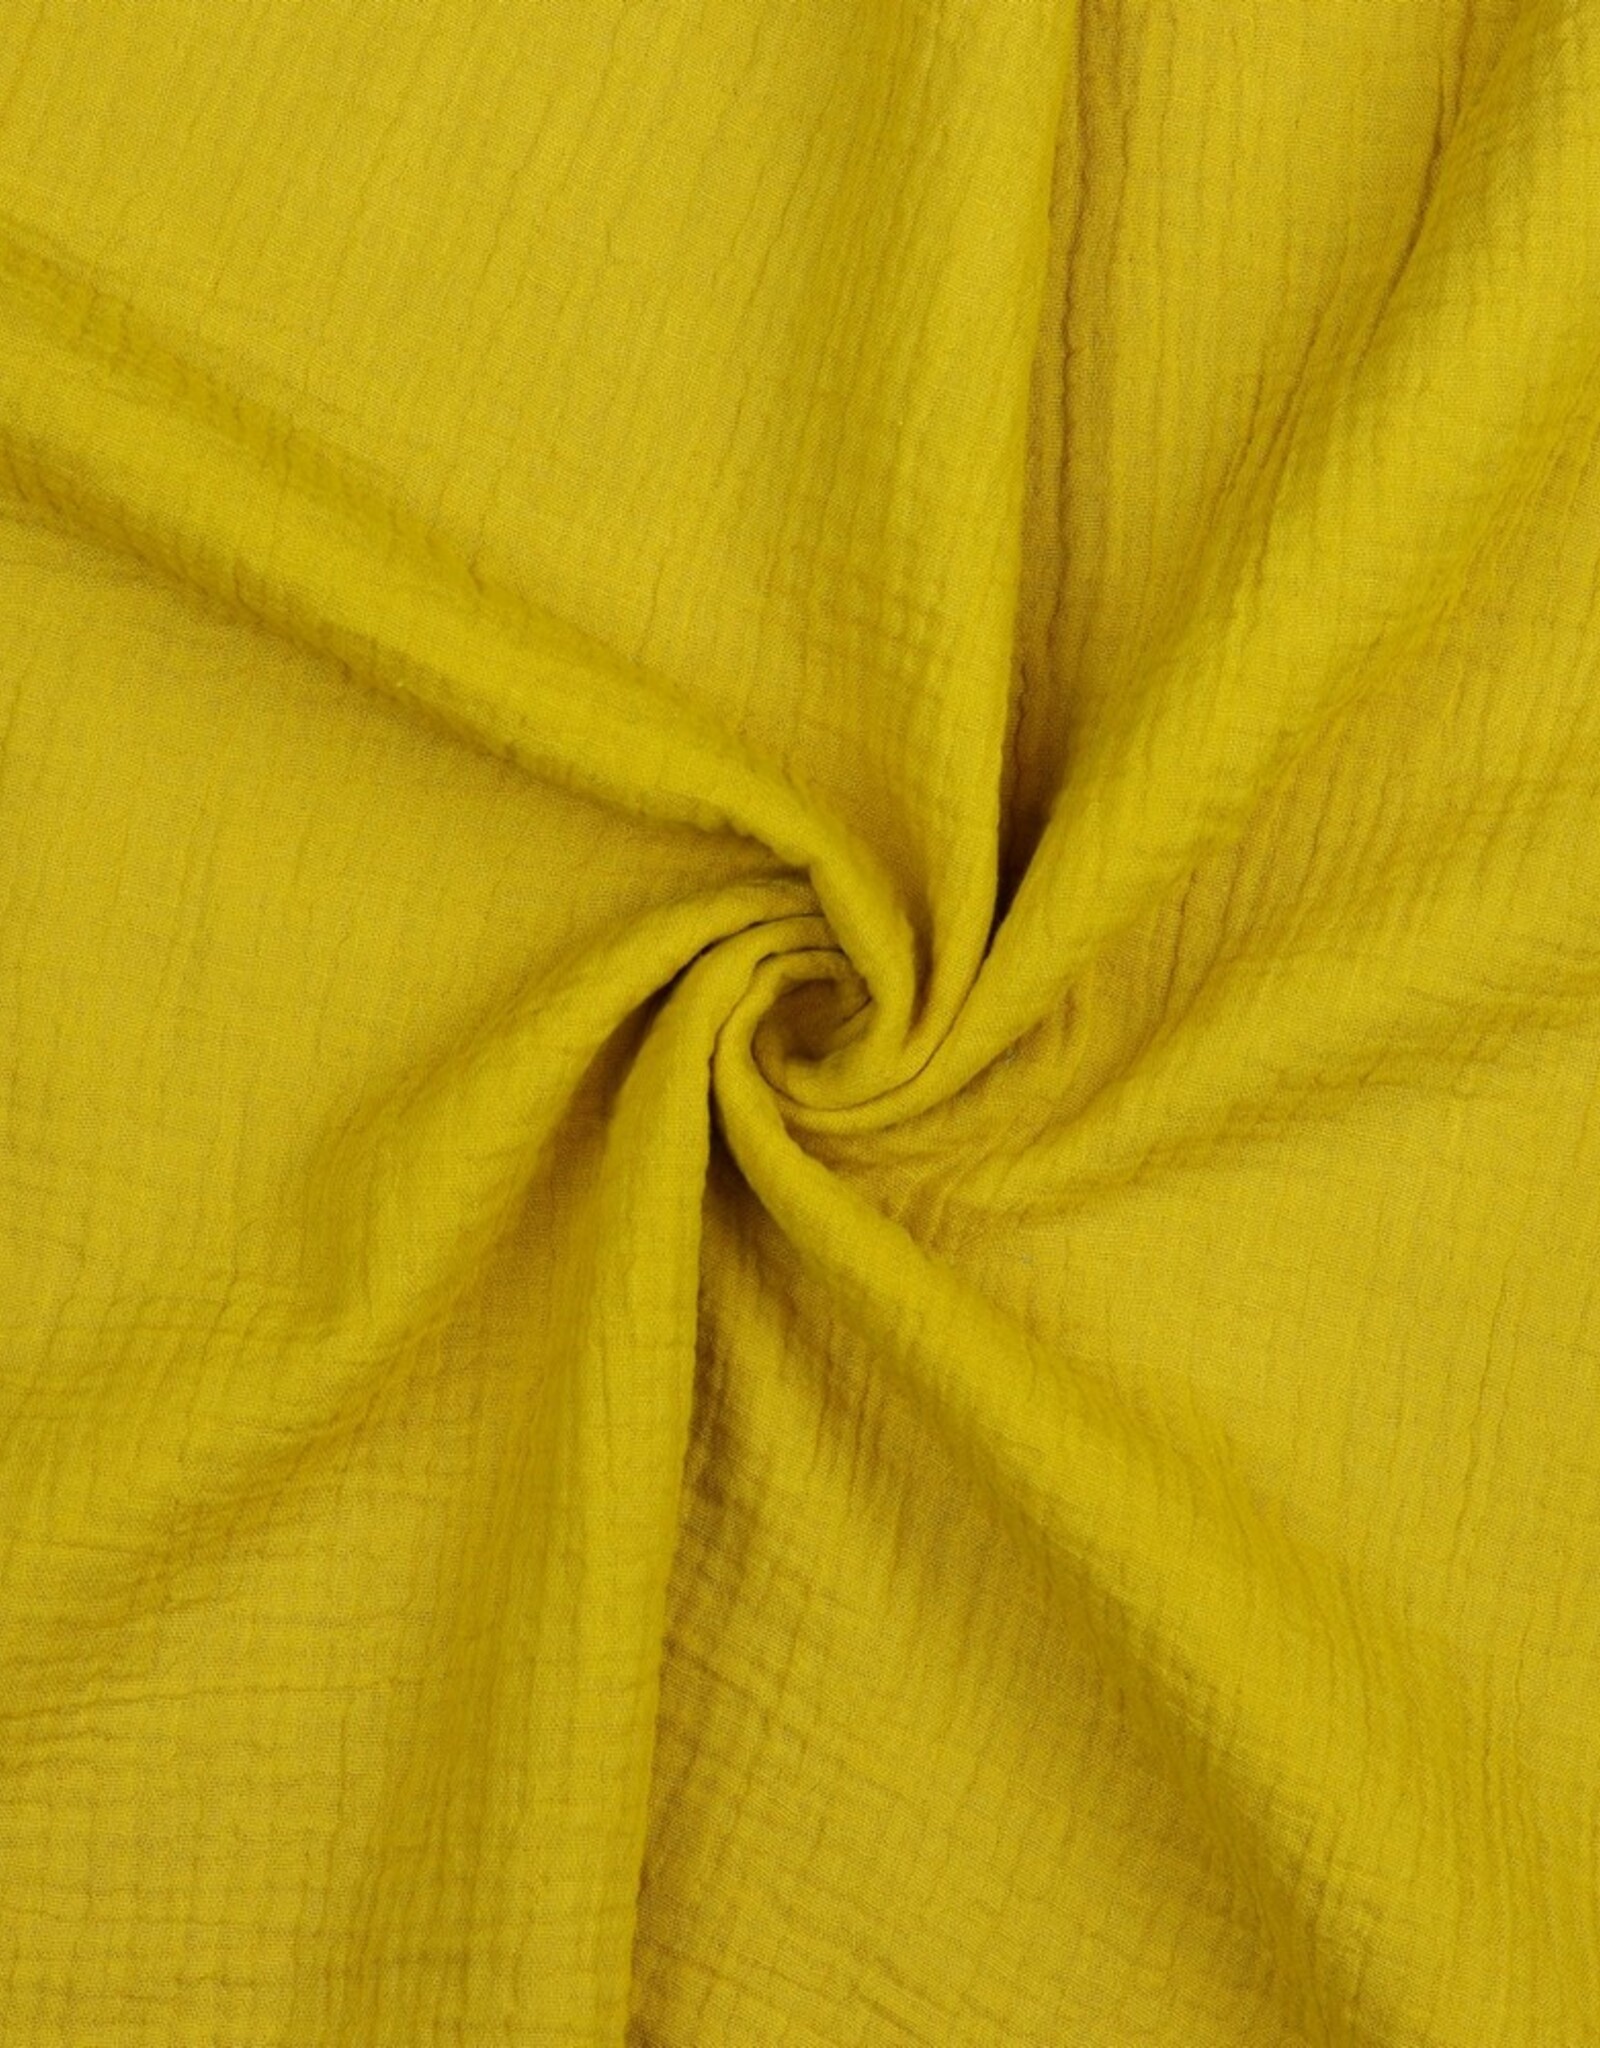 Poppy Double Gauze Uni donker geel